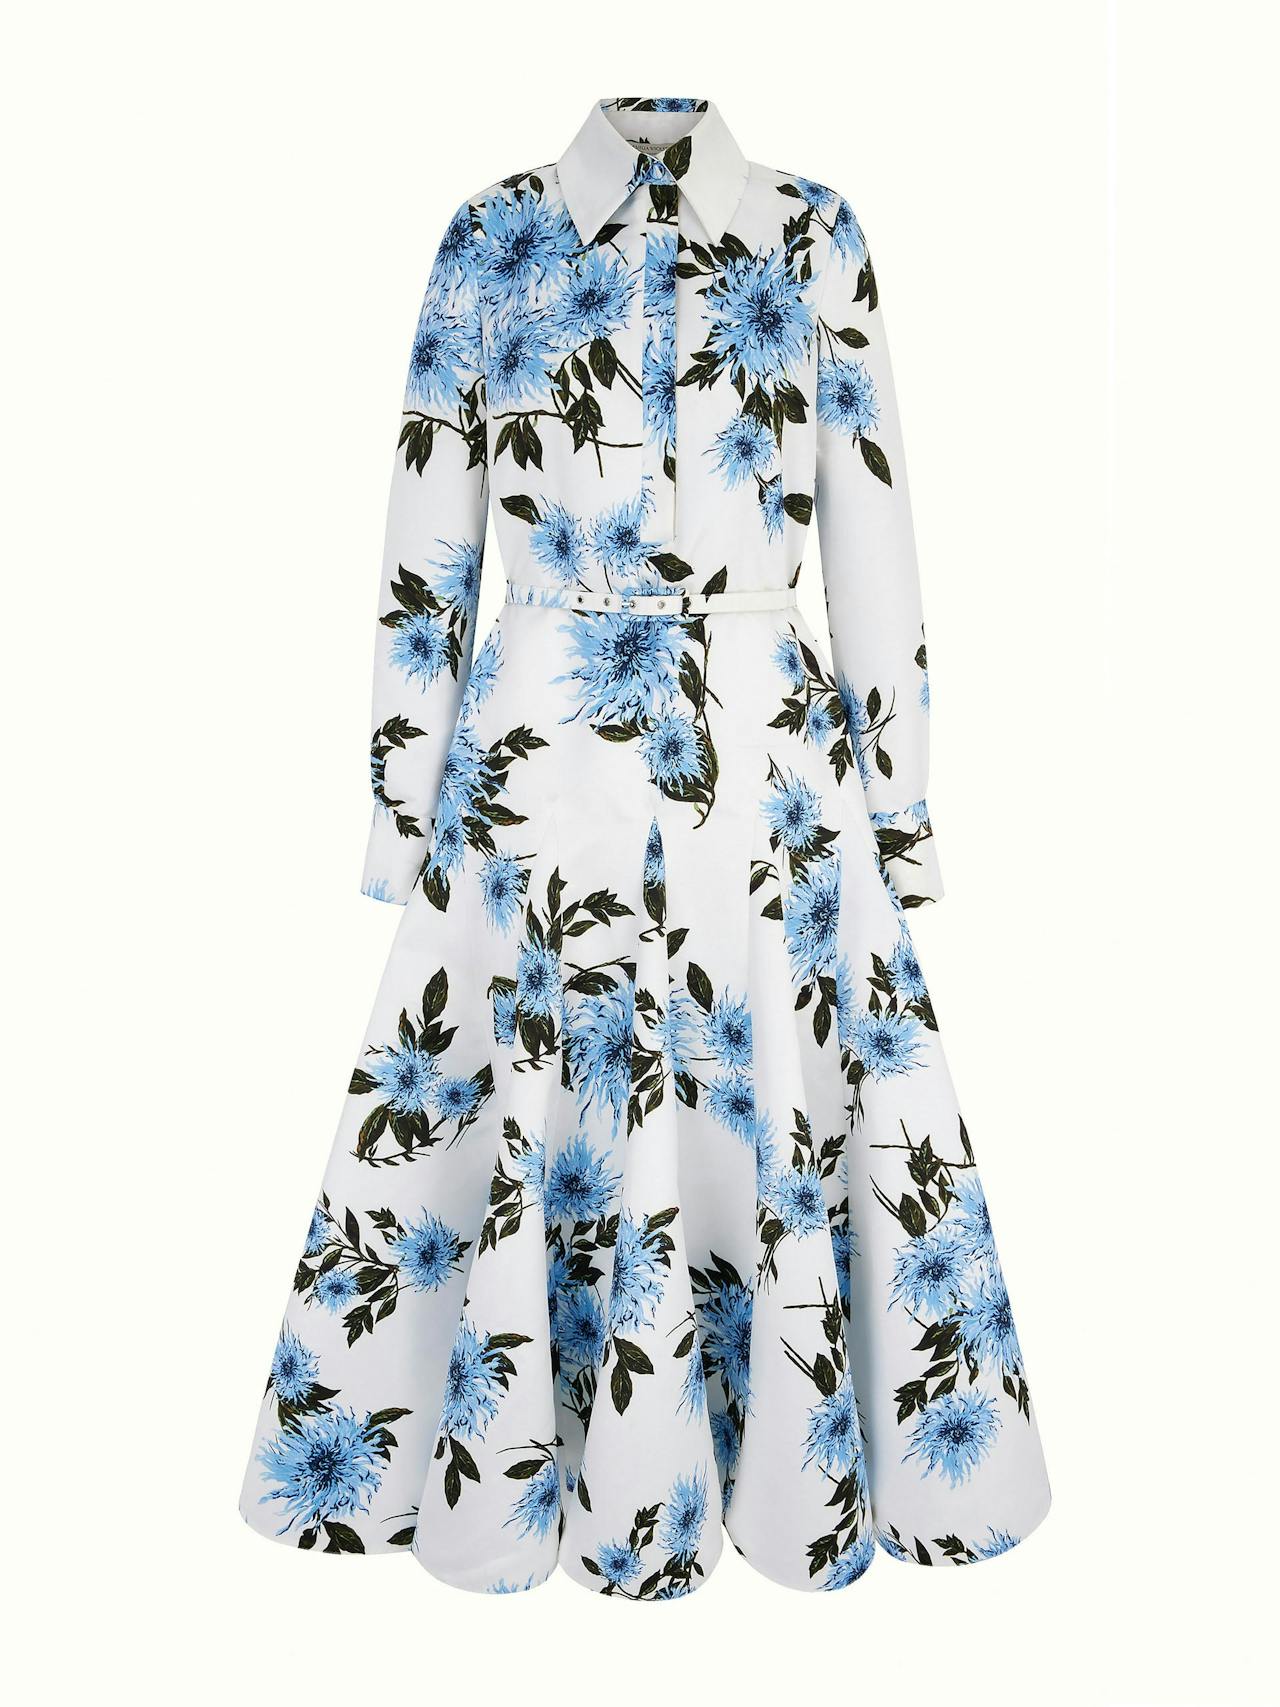 Tomasina dress in blue dahlia floral print taffeta faille